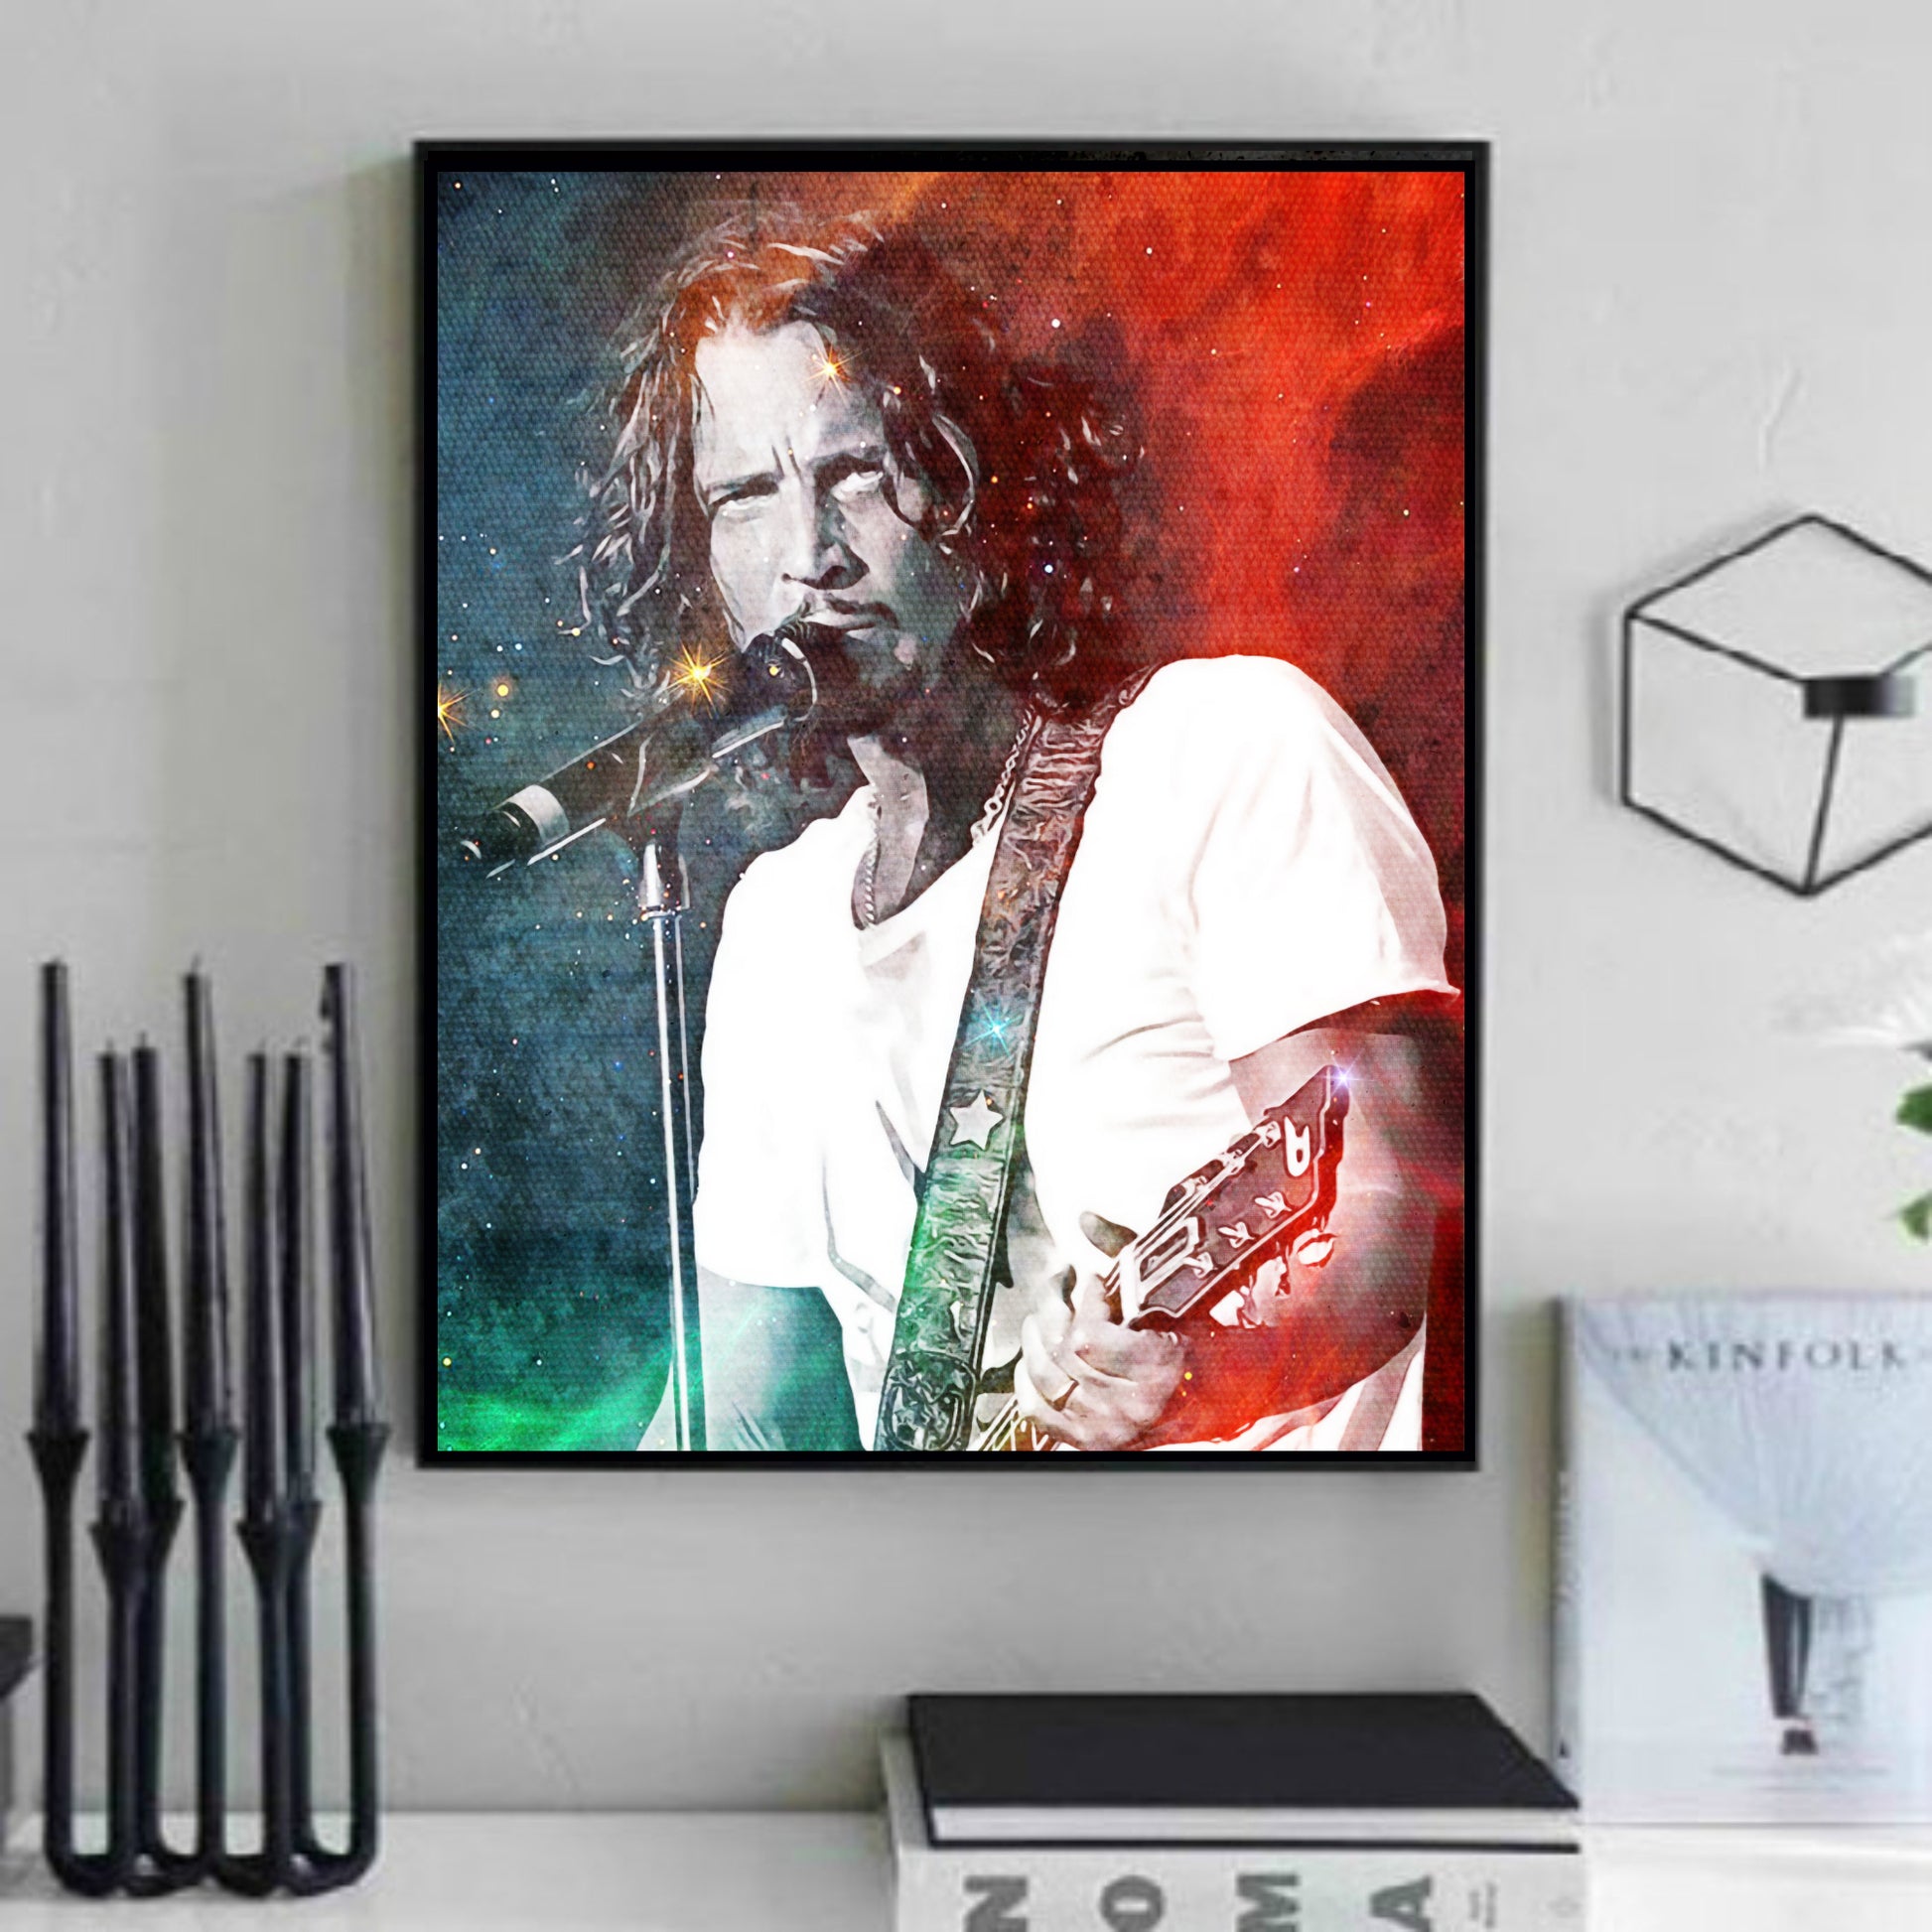 Chris Cornell artwork for sale